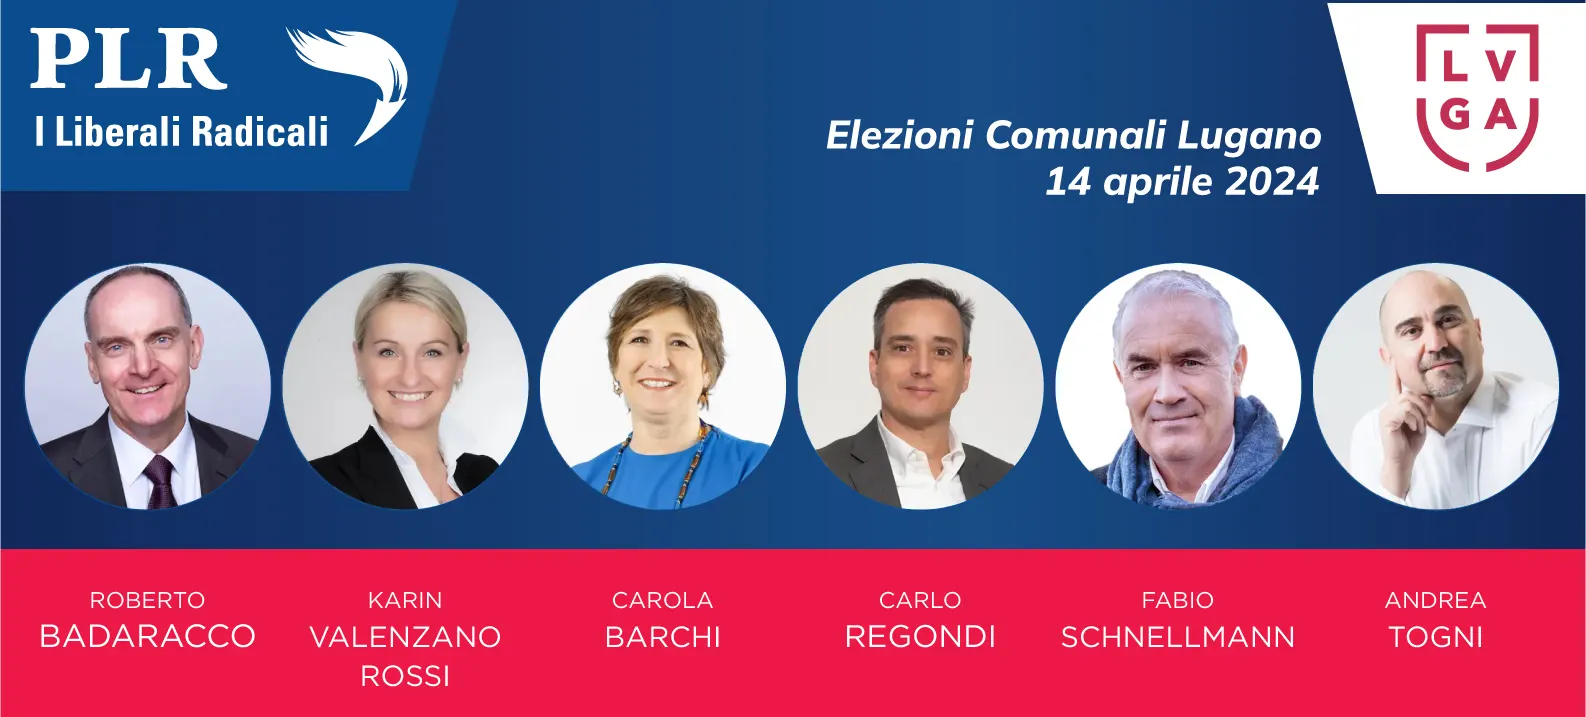 Candidati PLR comunali Lugano 2024